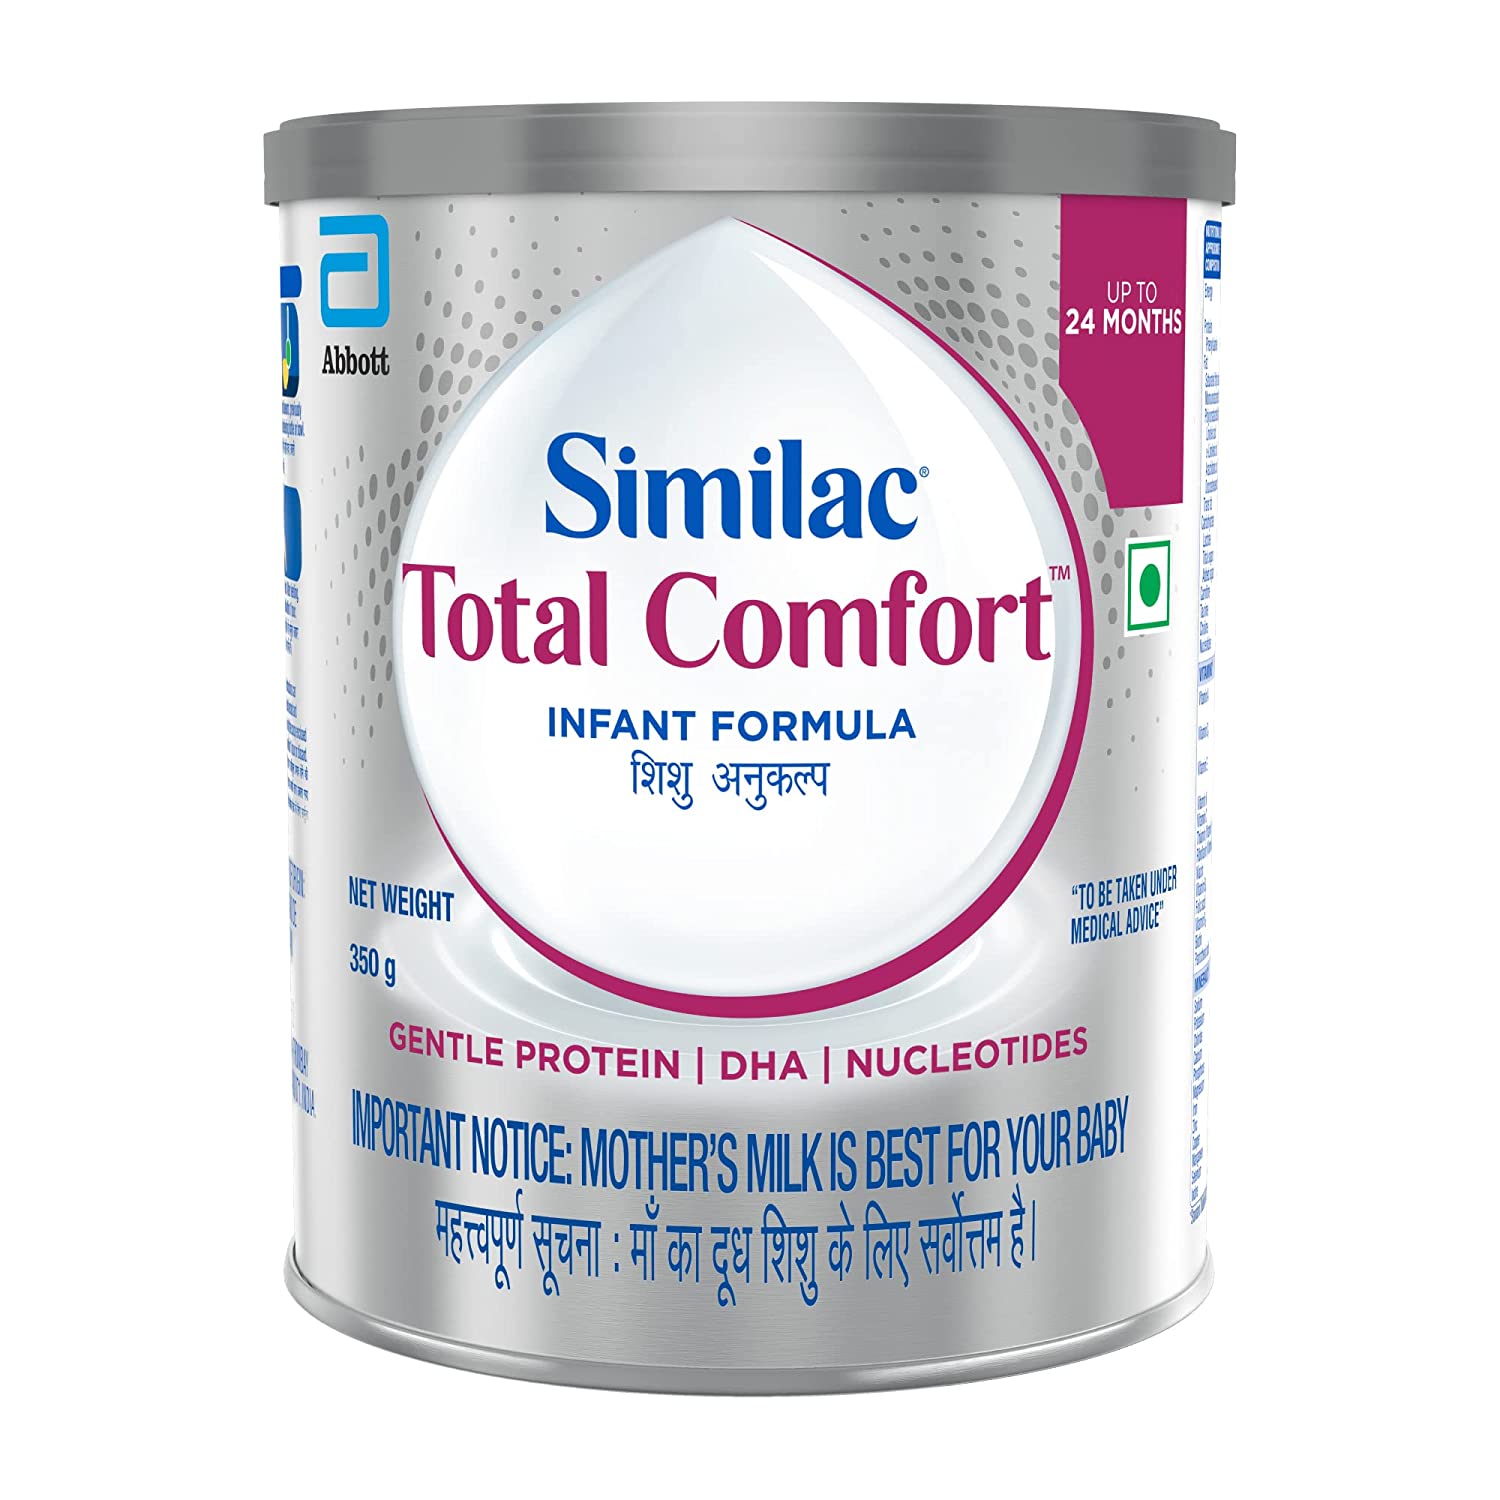 Similac Total Comfort Infant Formula Upto 6 Month